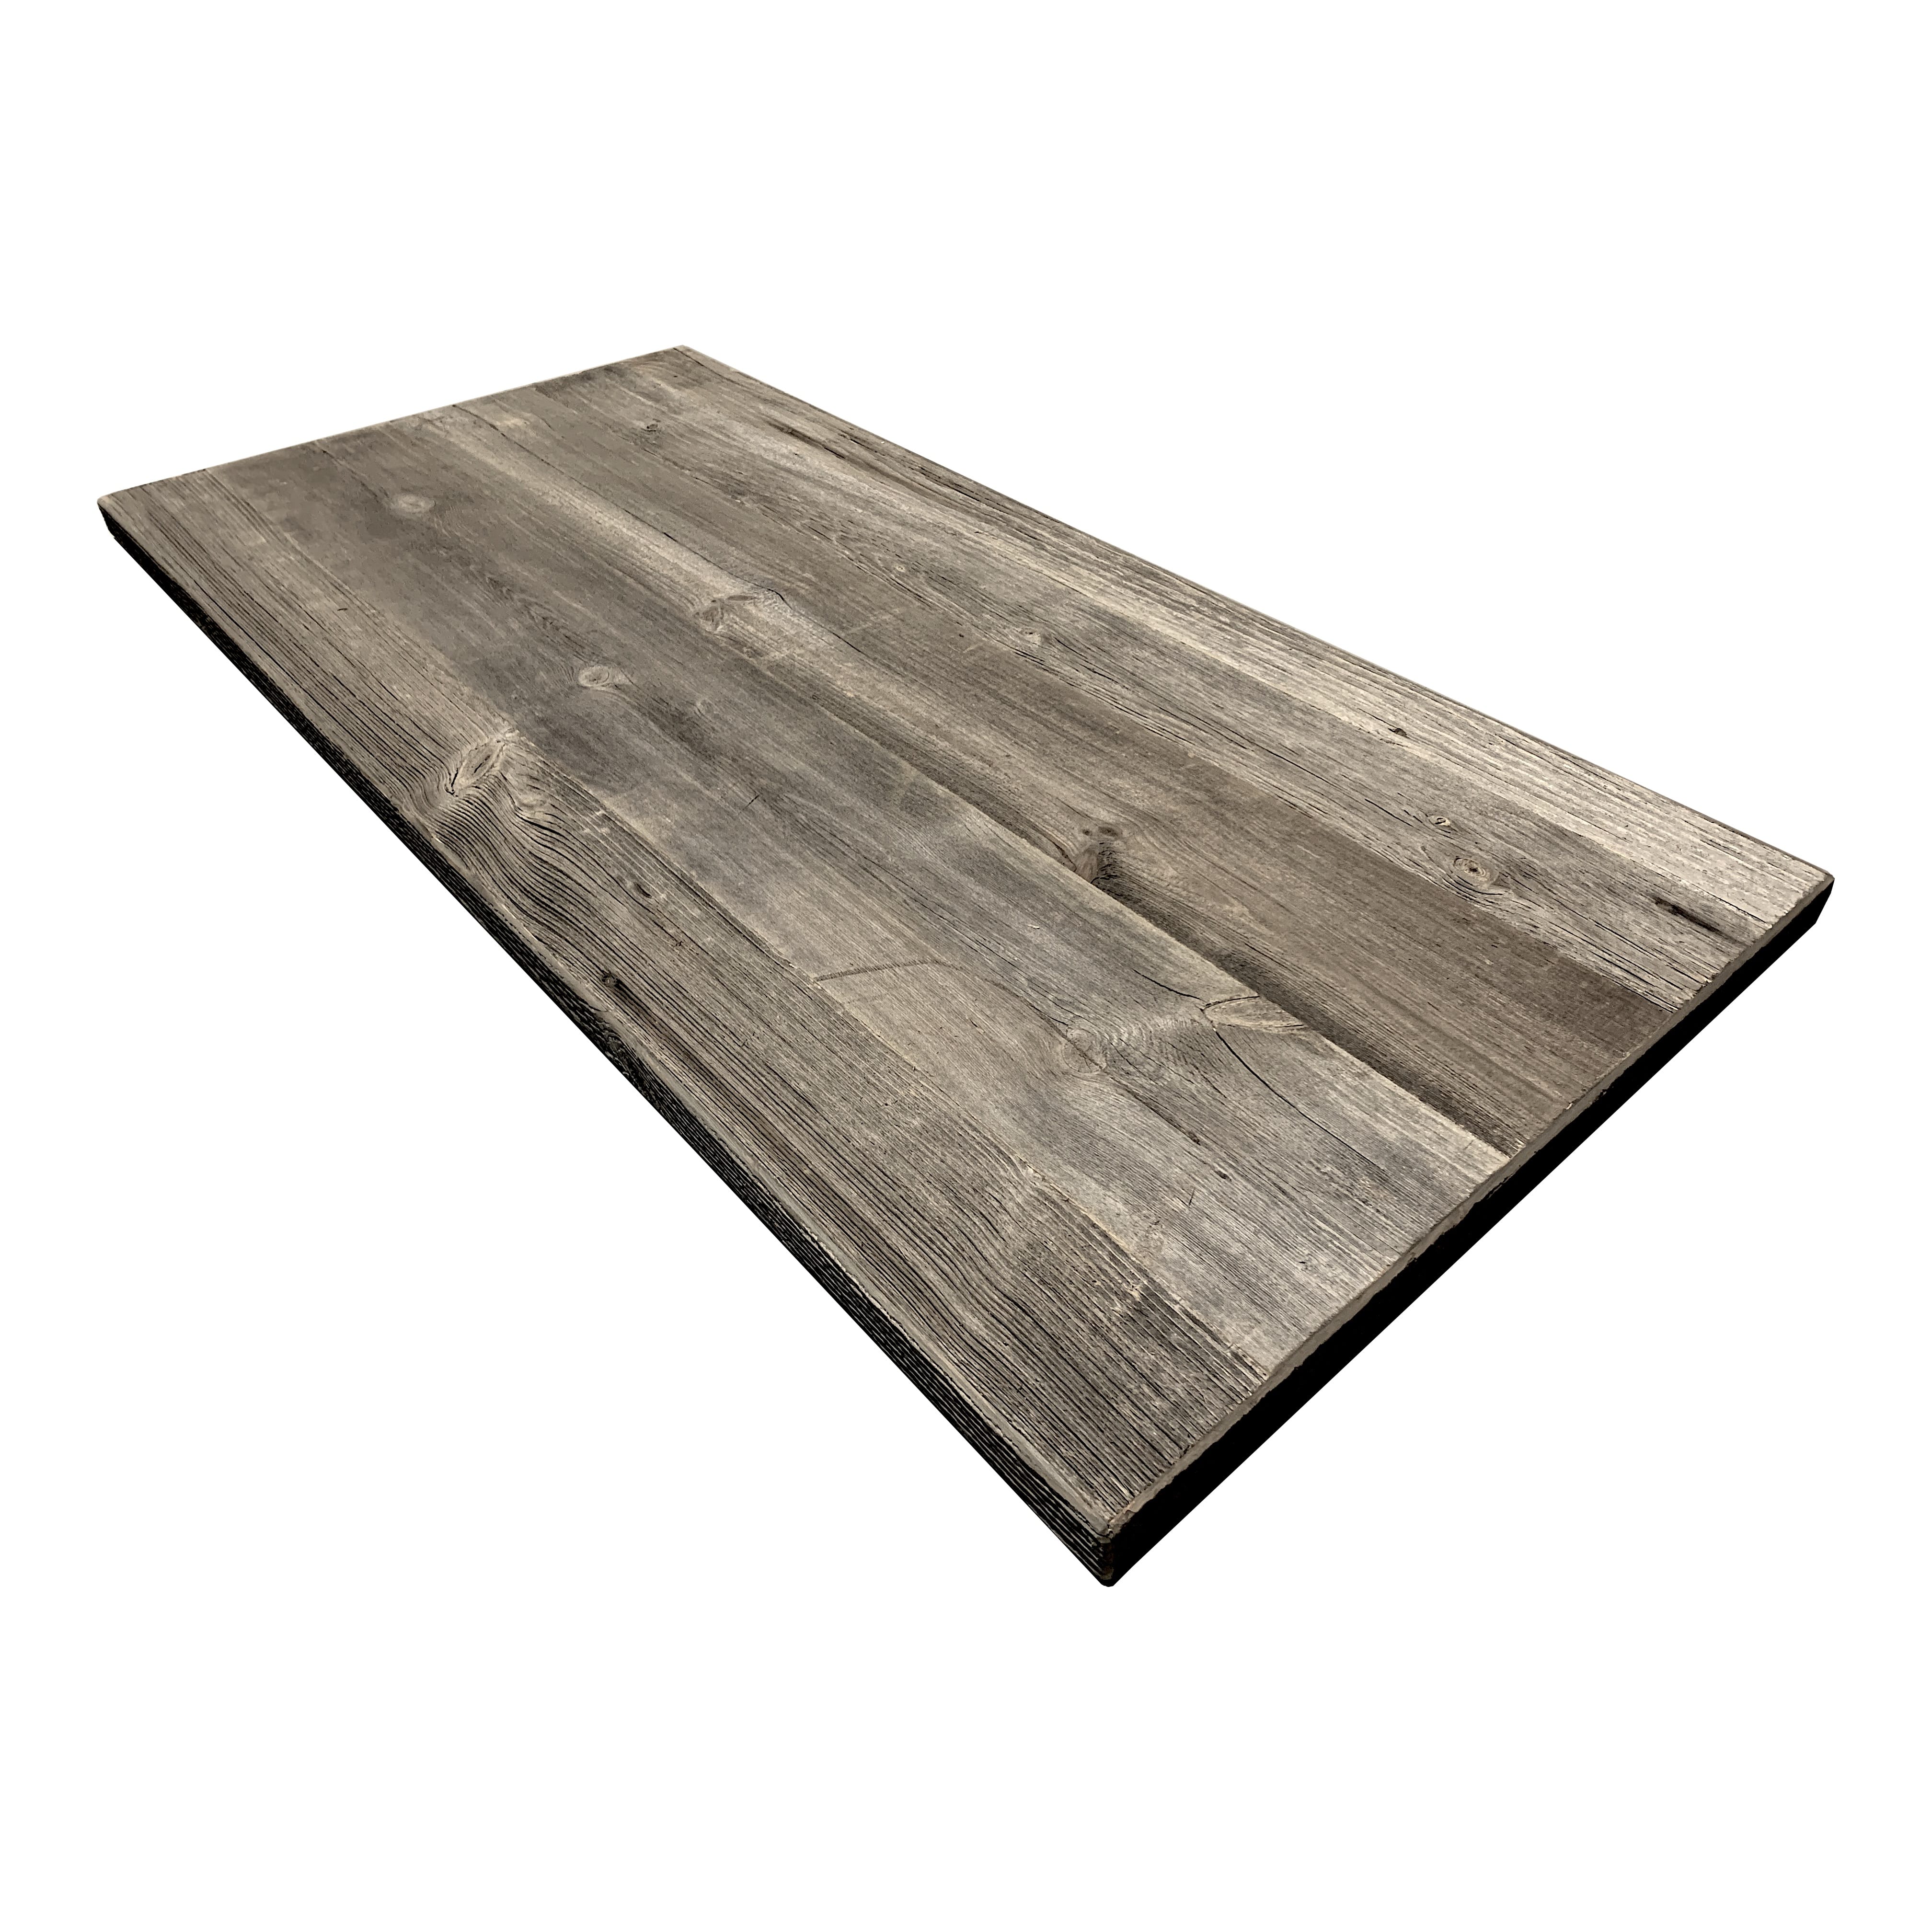  Grey barn wood table 